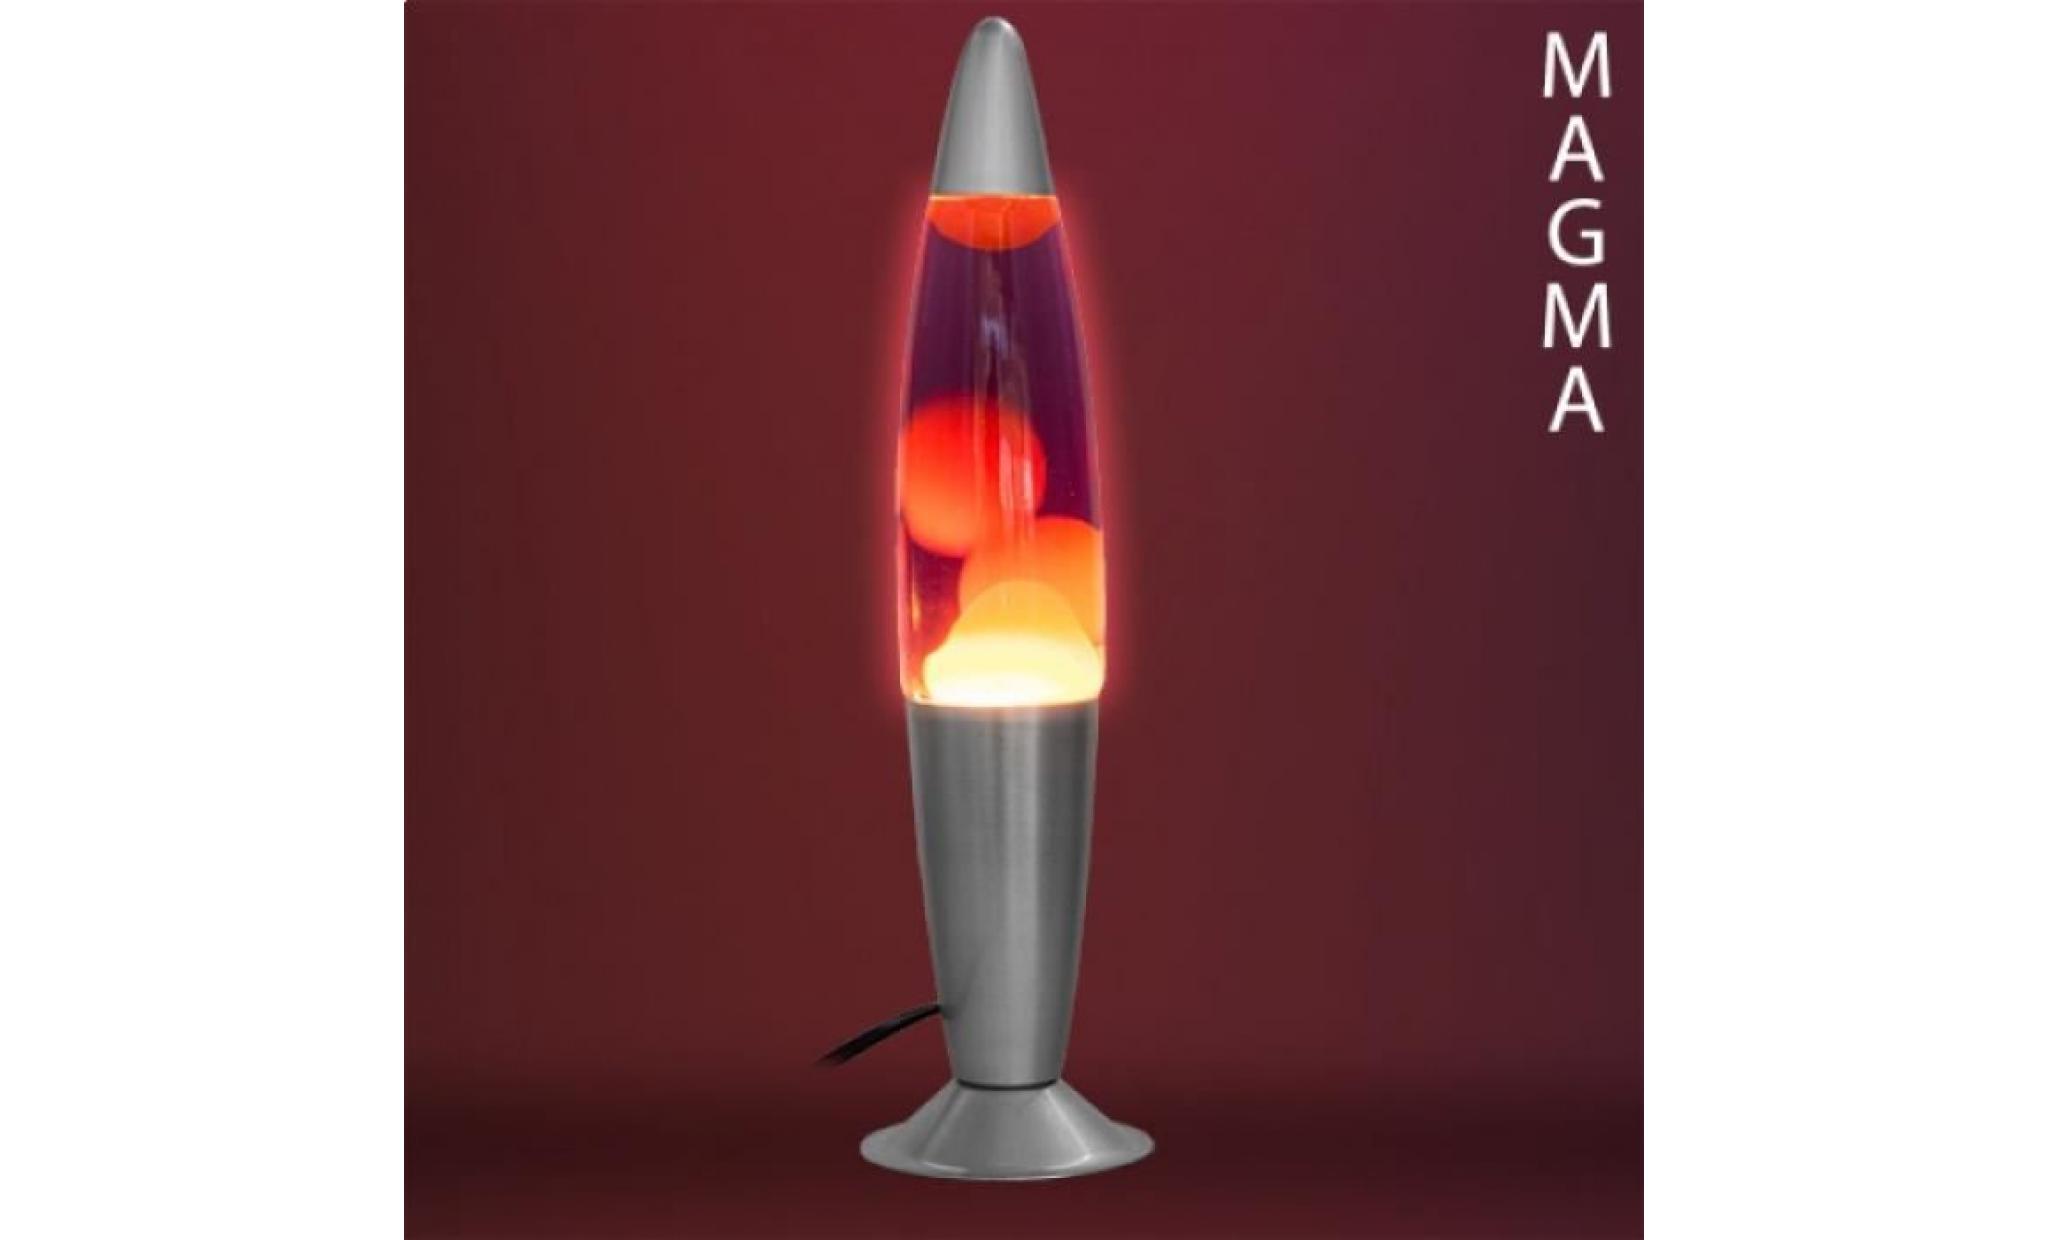 Lampe à Lave Magma fusée bleu pas cher